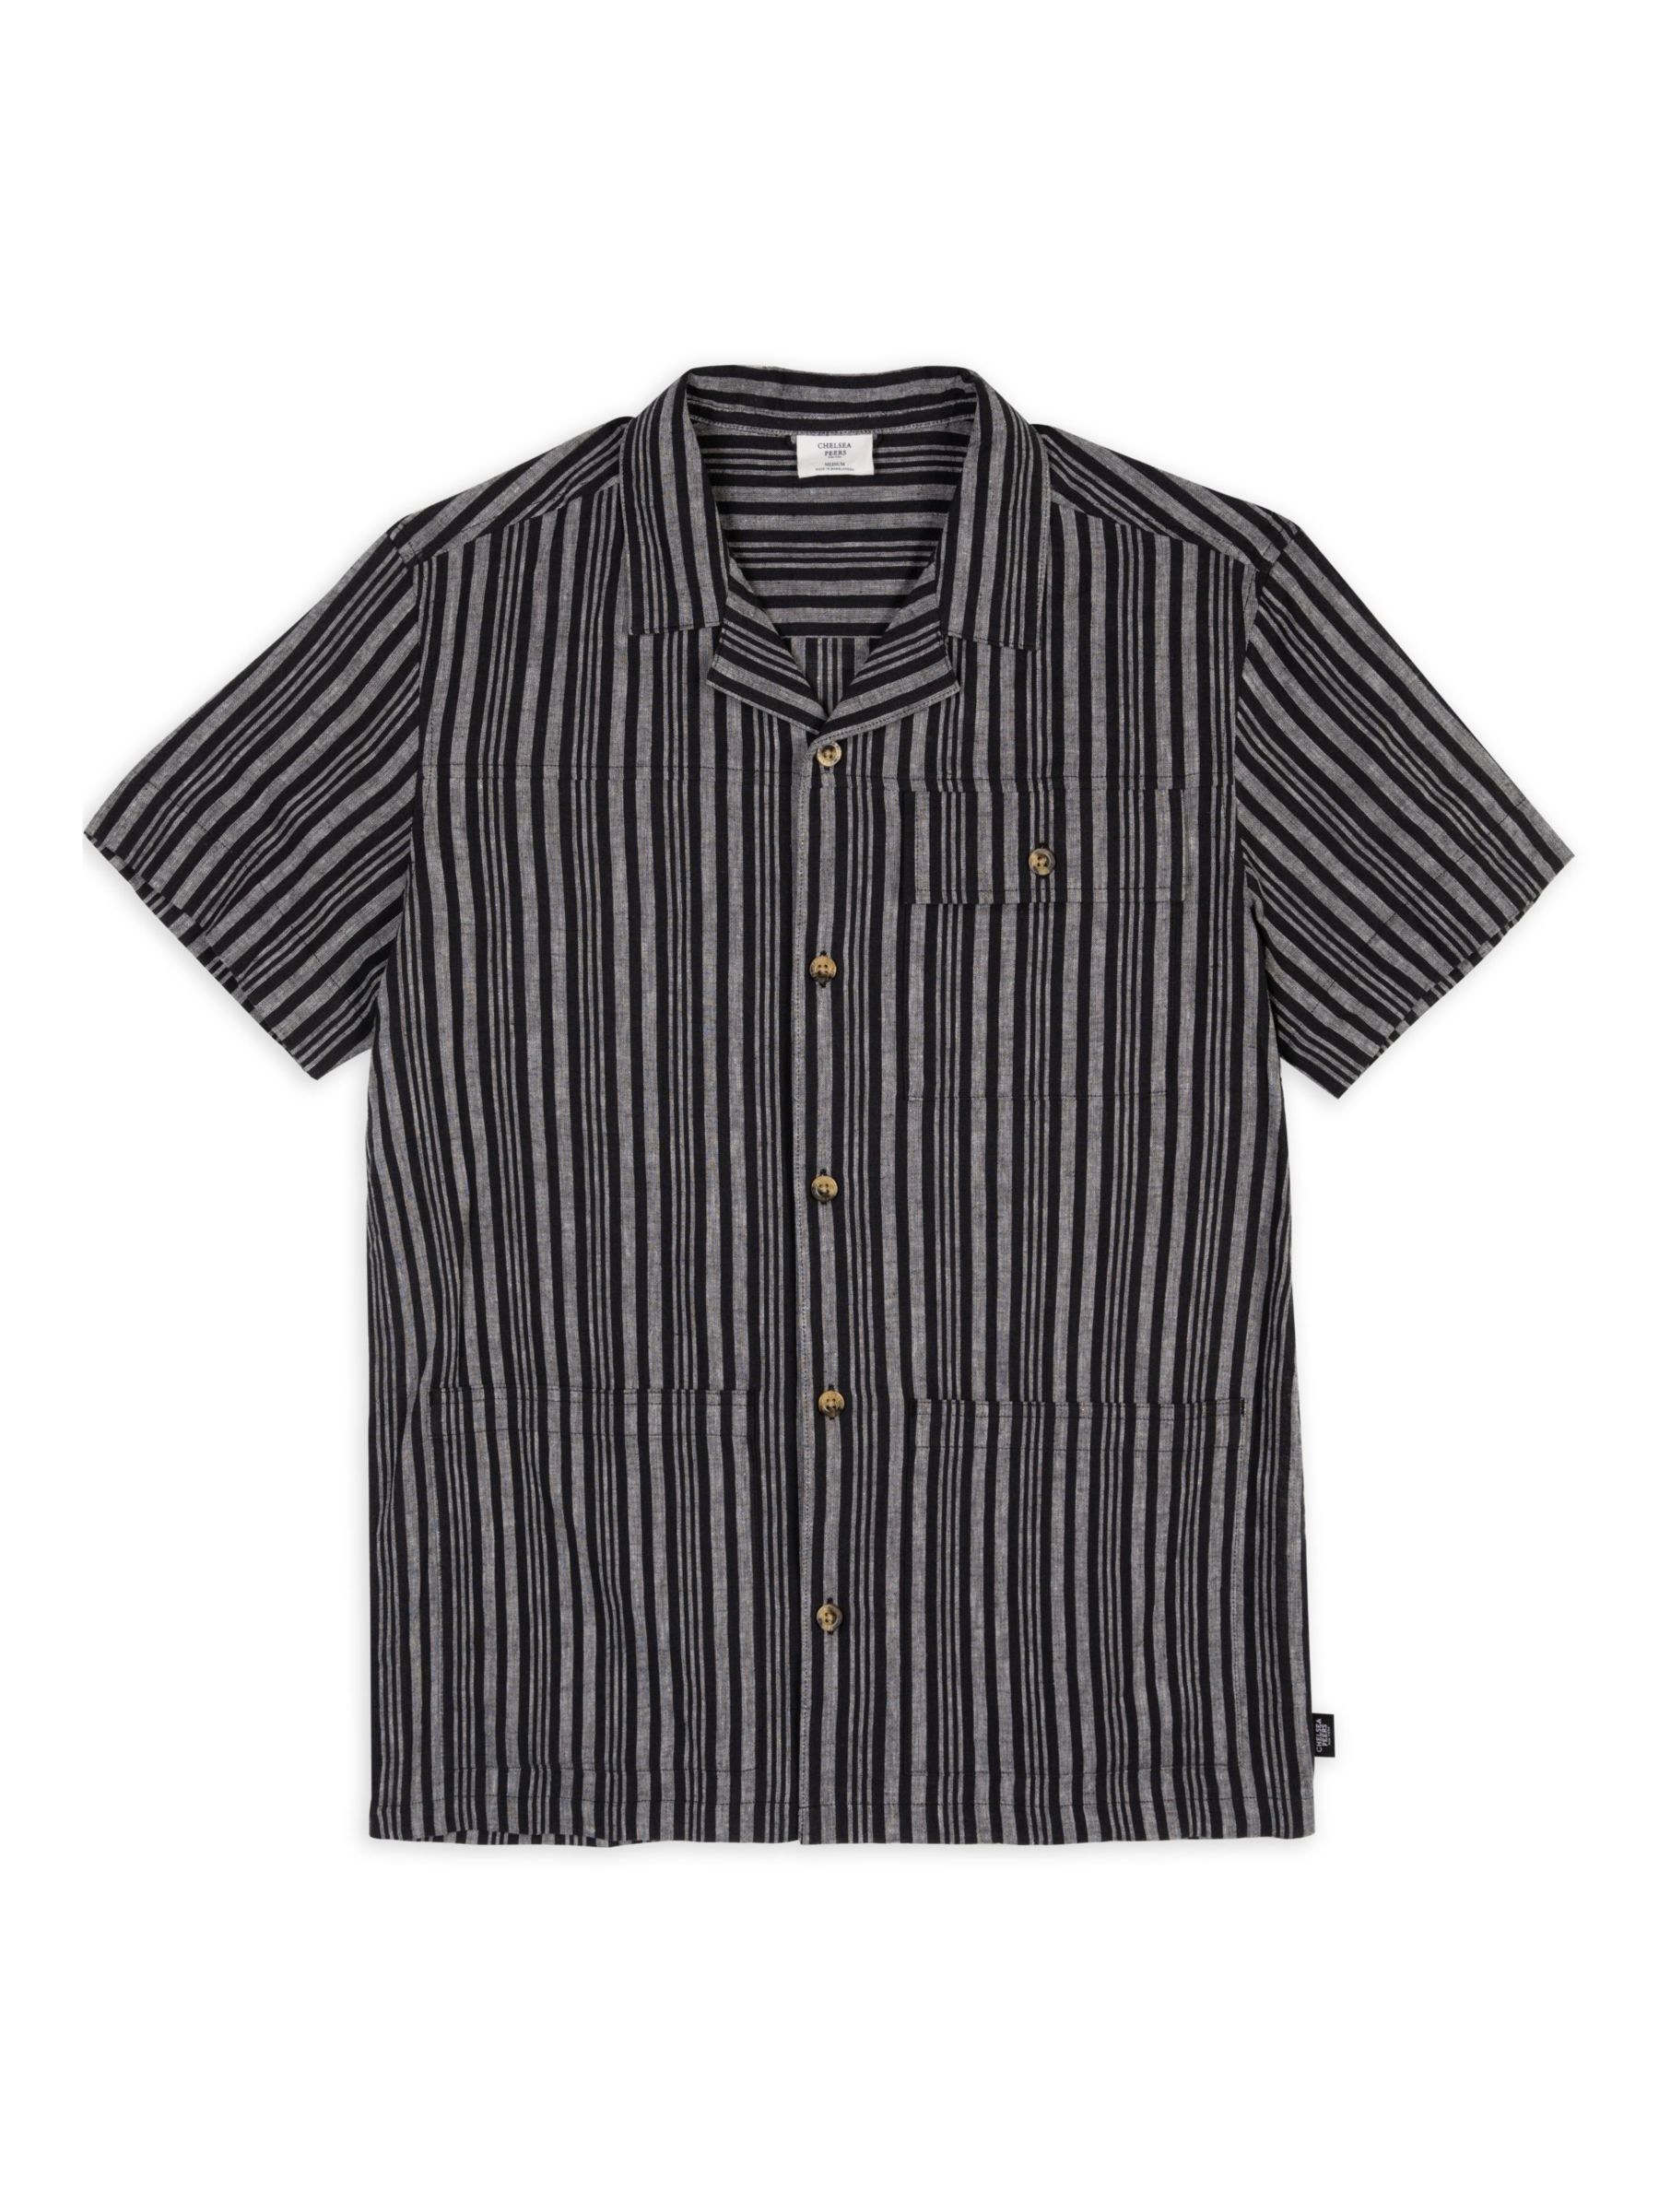 Chelsea Peers Linen Blend Stripe Shirt, Black/White, L